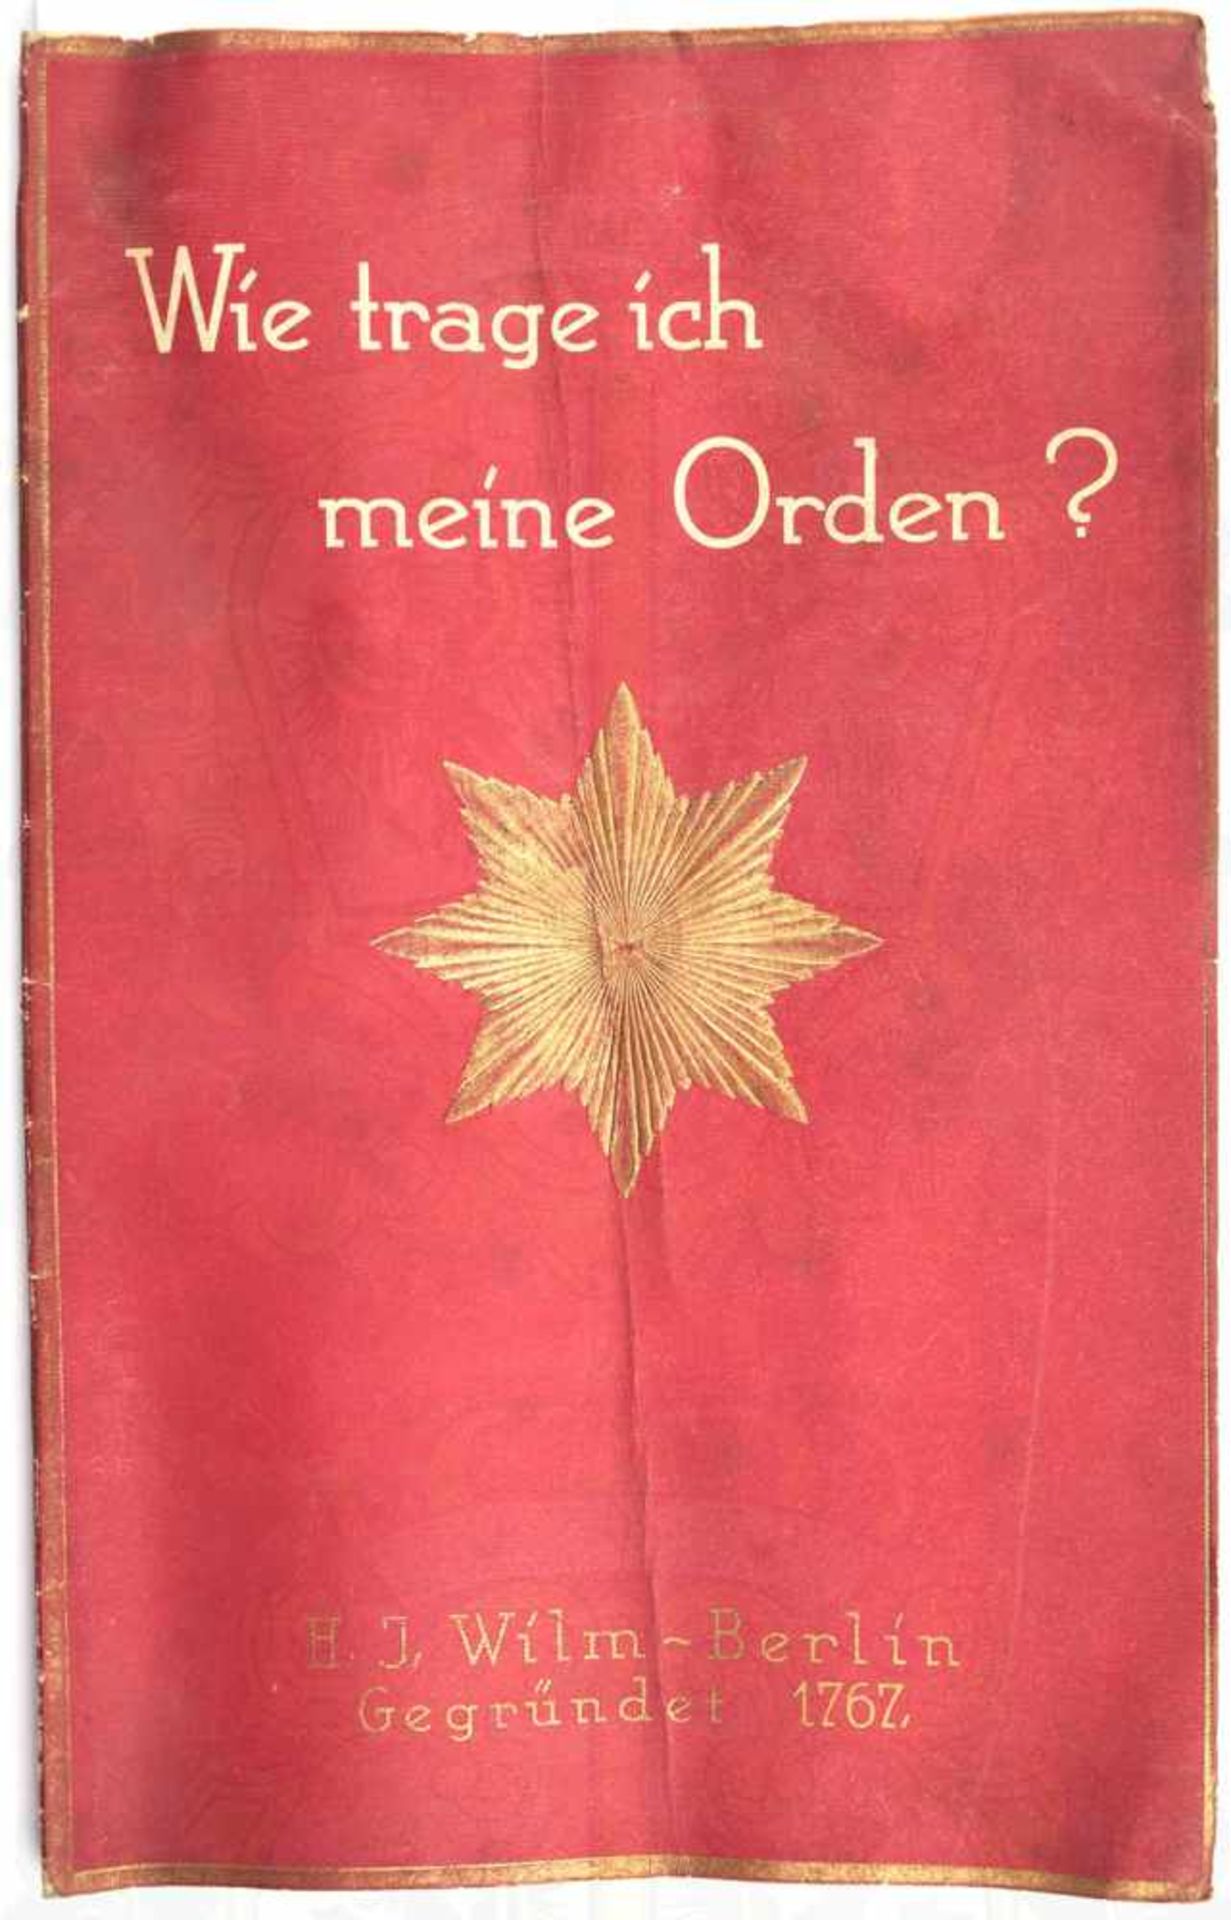 WIE TRAGE ICH MEINE ORDEN ?, Hrsg. H. J. Wilm Hofjuwelier Berlin, um 1928, 16 S., dabei 5 S. farbige